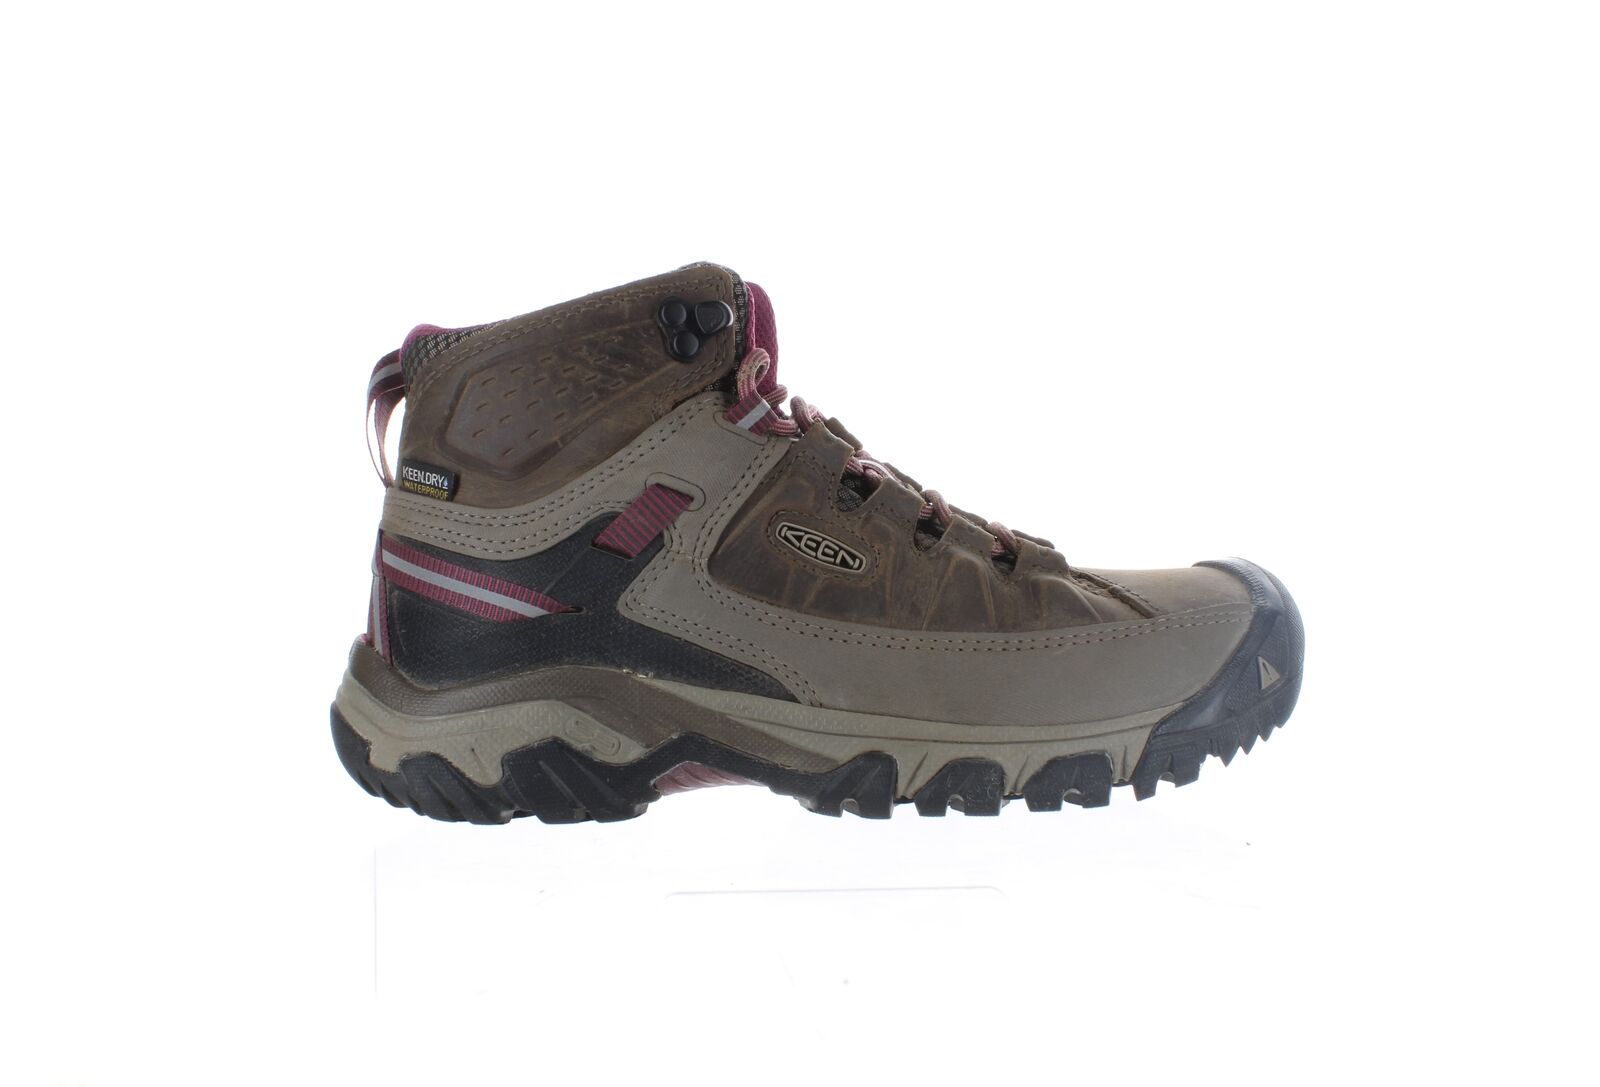 KEEN Womens Targhee 3 Weiss/Boysenberry Hiking Boots Size 7.5 (2259486)